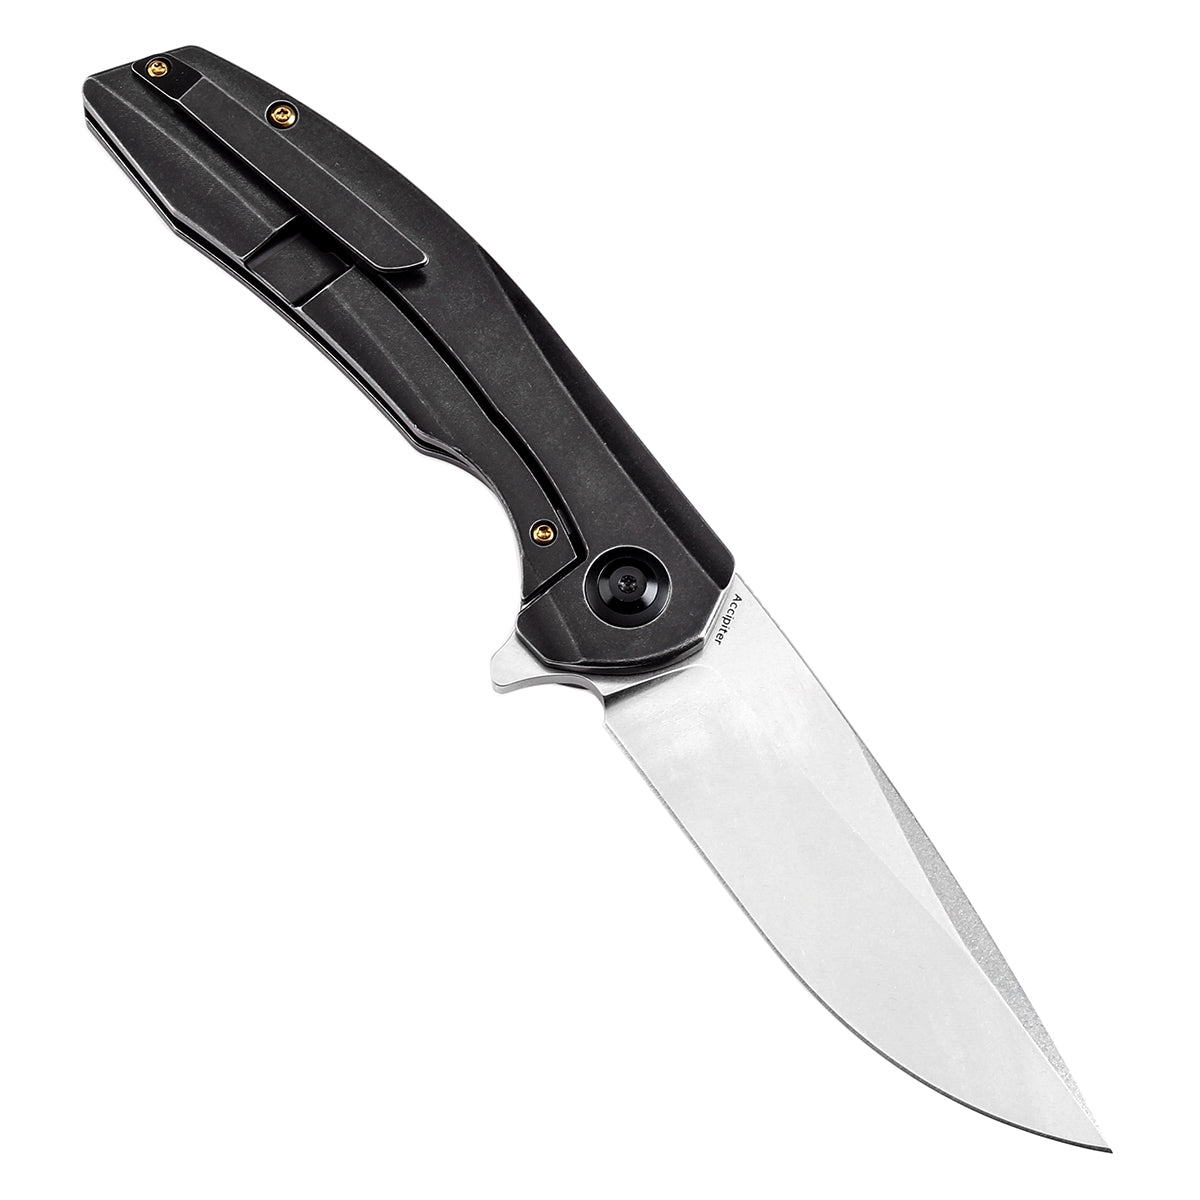 Kansept Accipiter Flipper Knife K1007E2 CPM S35VN Blade Titanium and Copper Carbon Fiber Handle Edc Knives